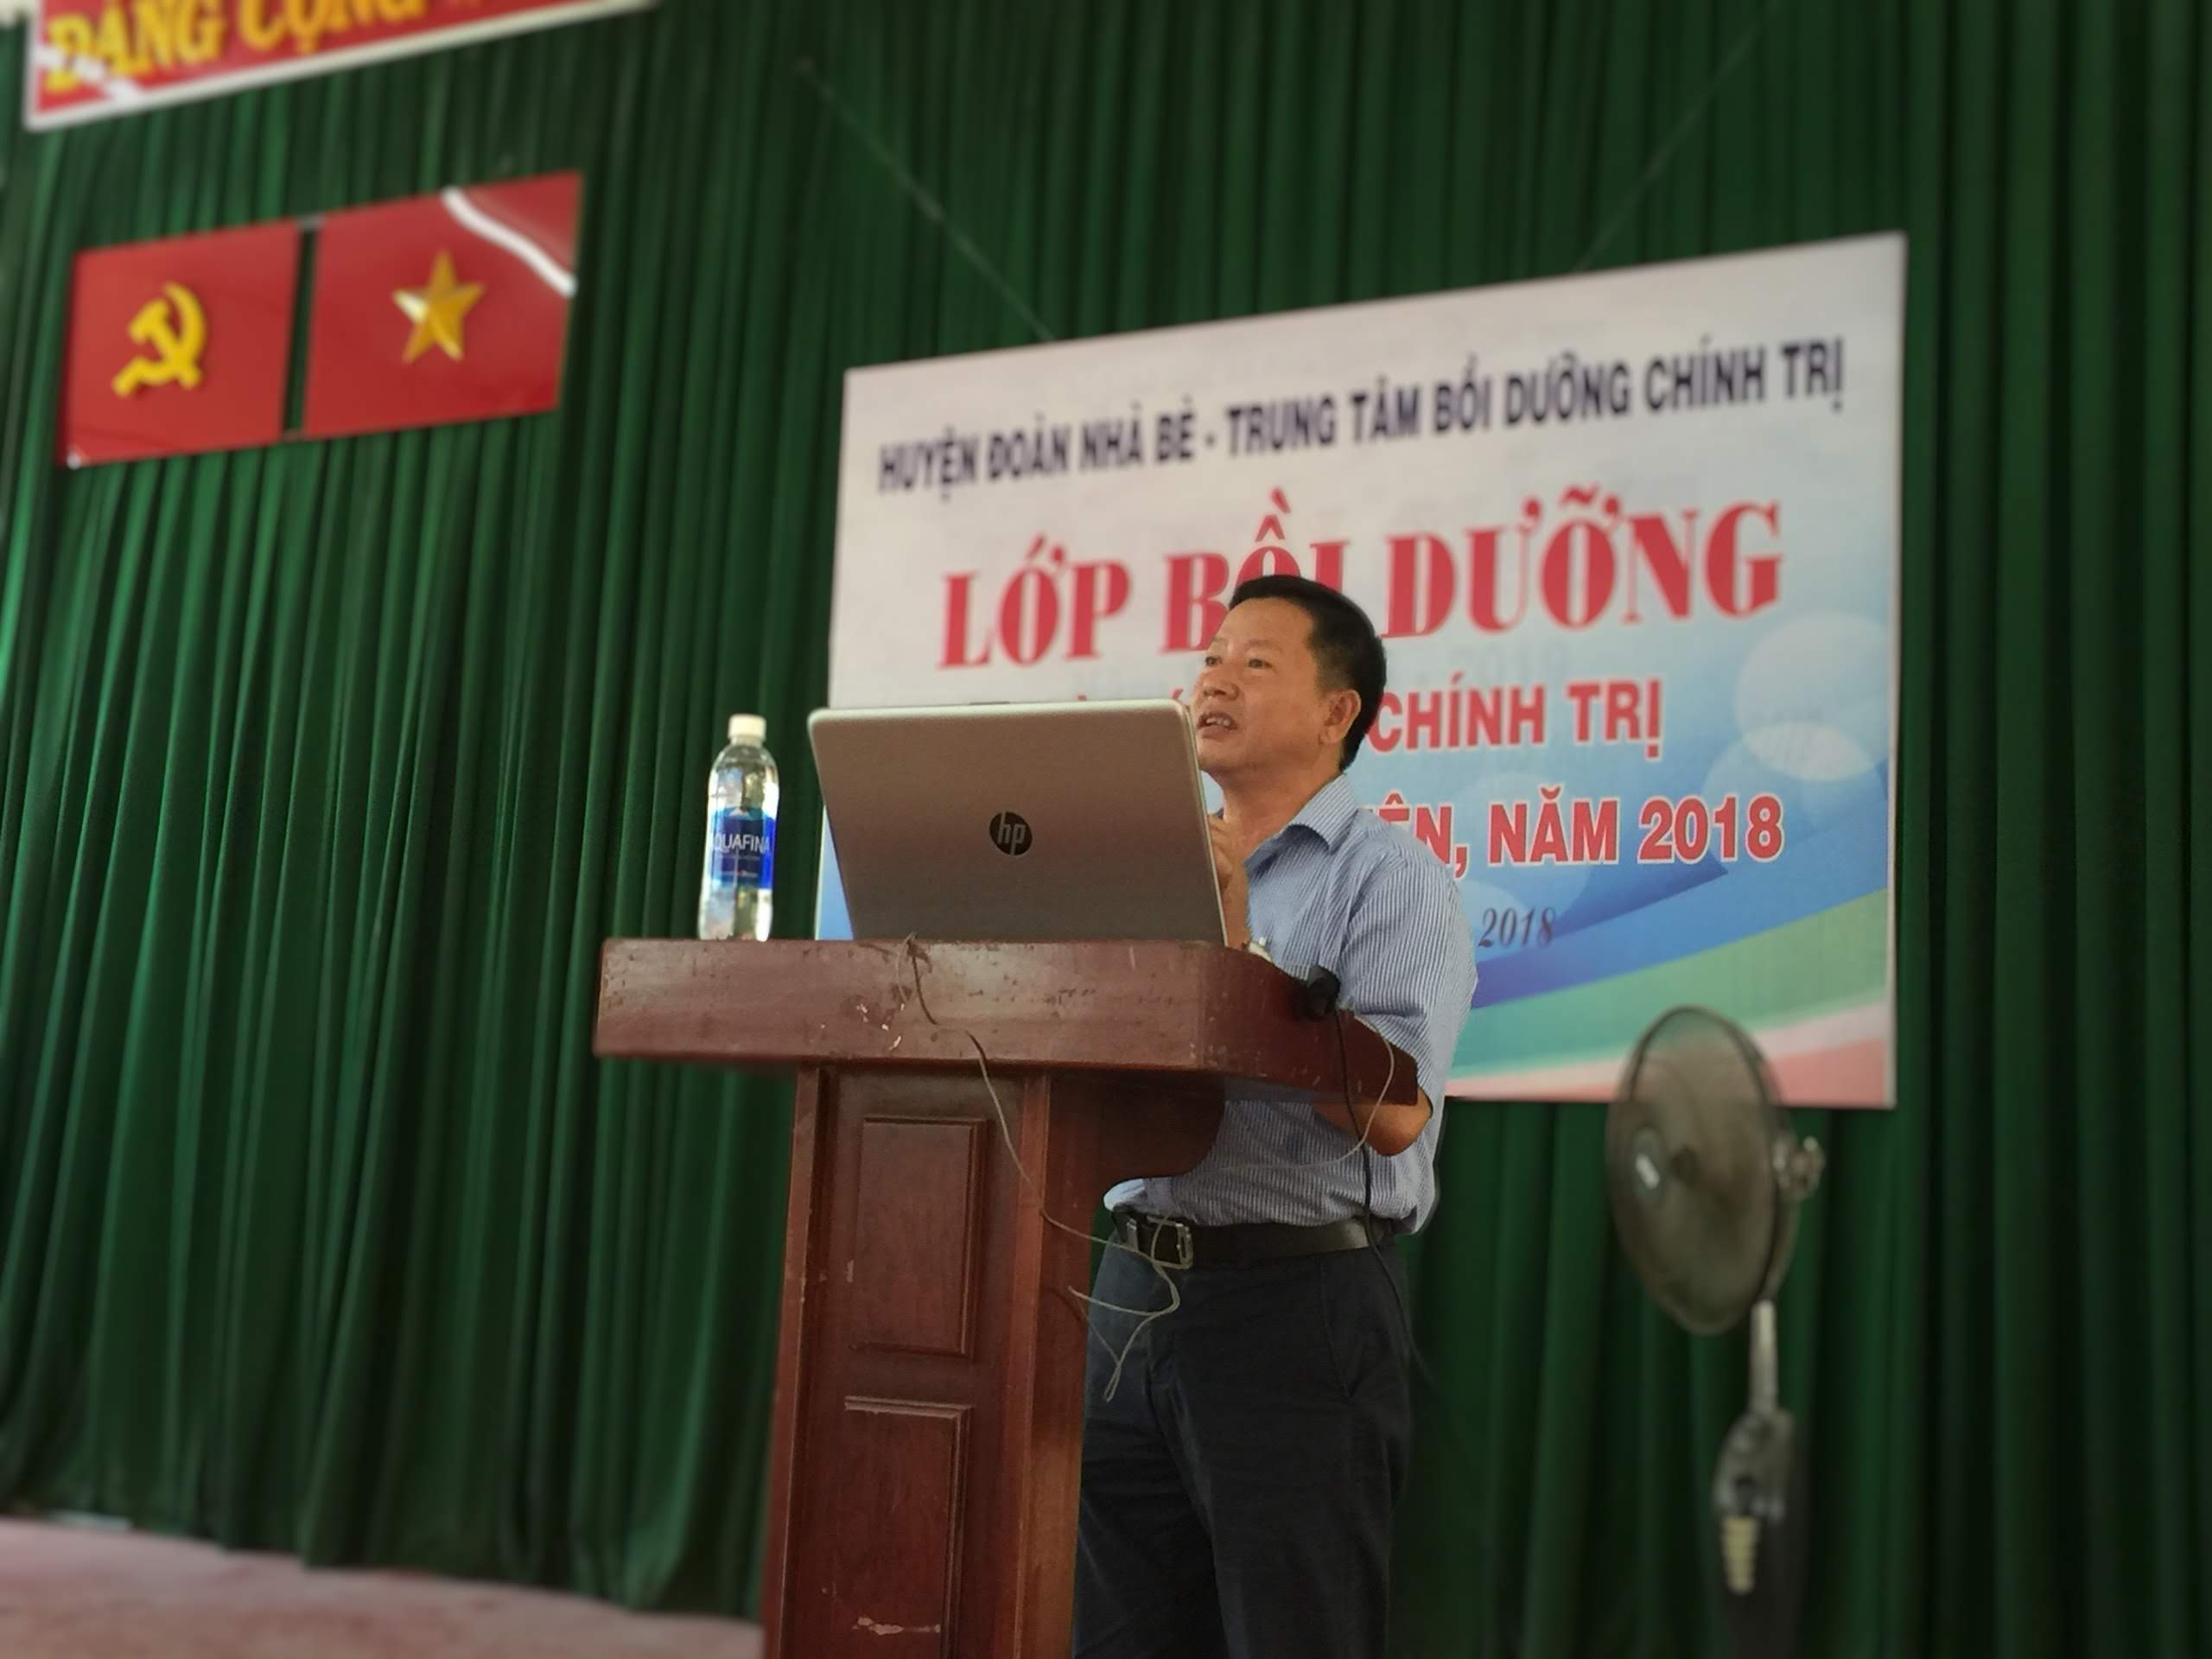 Đ/c Võ Văn Do, Chủ tịch Ủy ban MTTQ Việt Nam huyện Nhà Bè báo cáo viên tại lớp học.